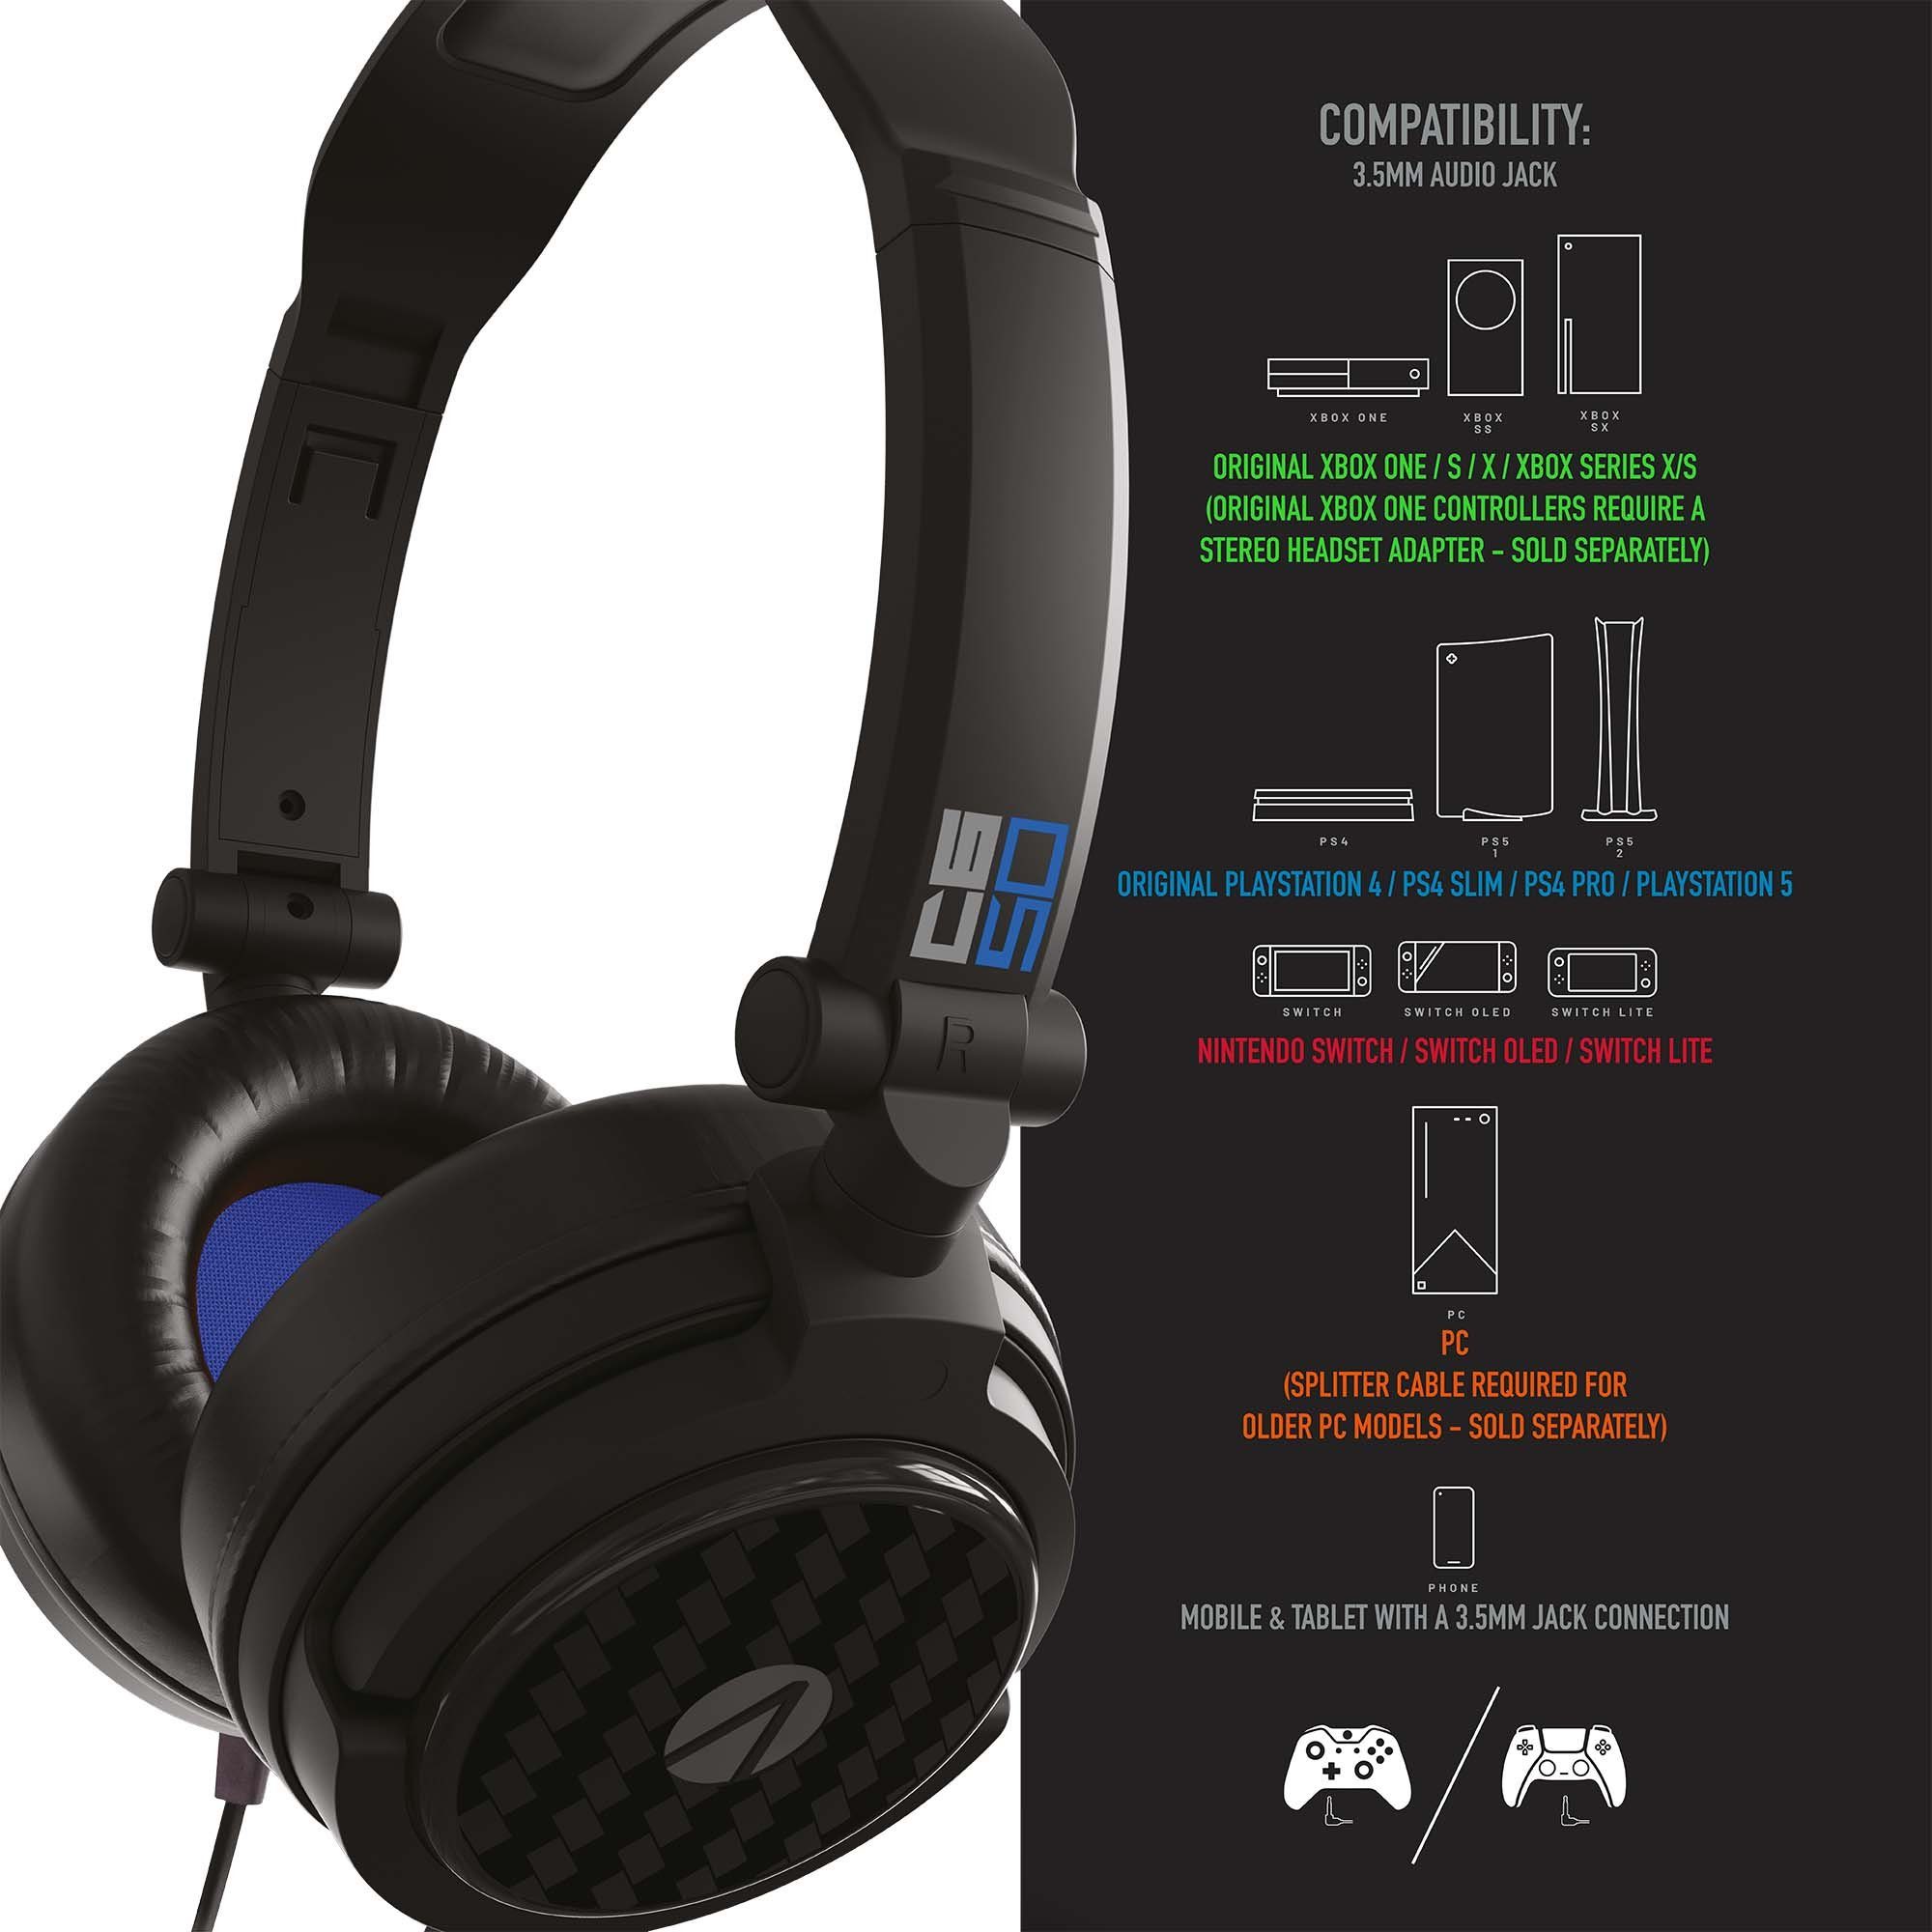 Stealth Multiformat Stereo Gaming Headset Verpackung) Stereo-Headset (Plastikfreie C6-50 schwarz